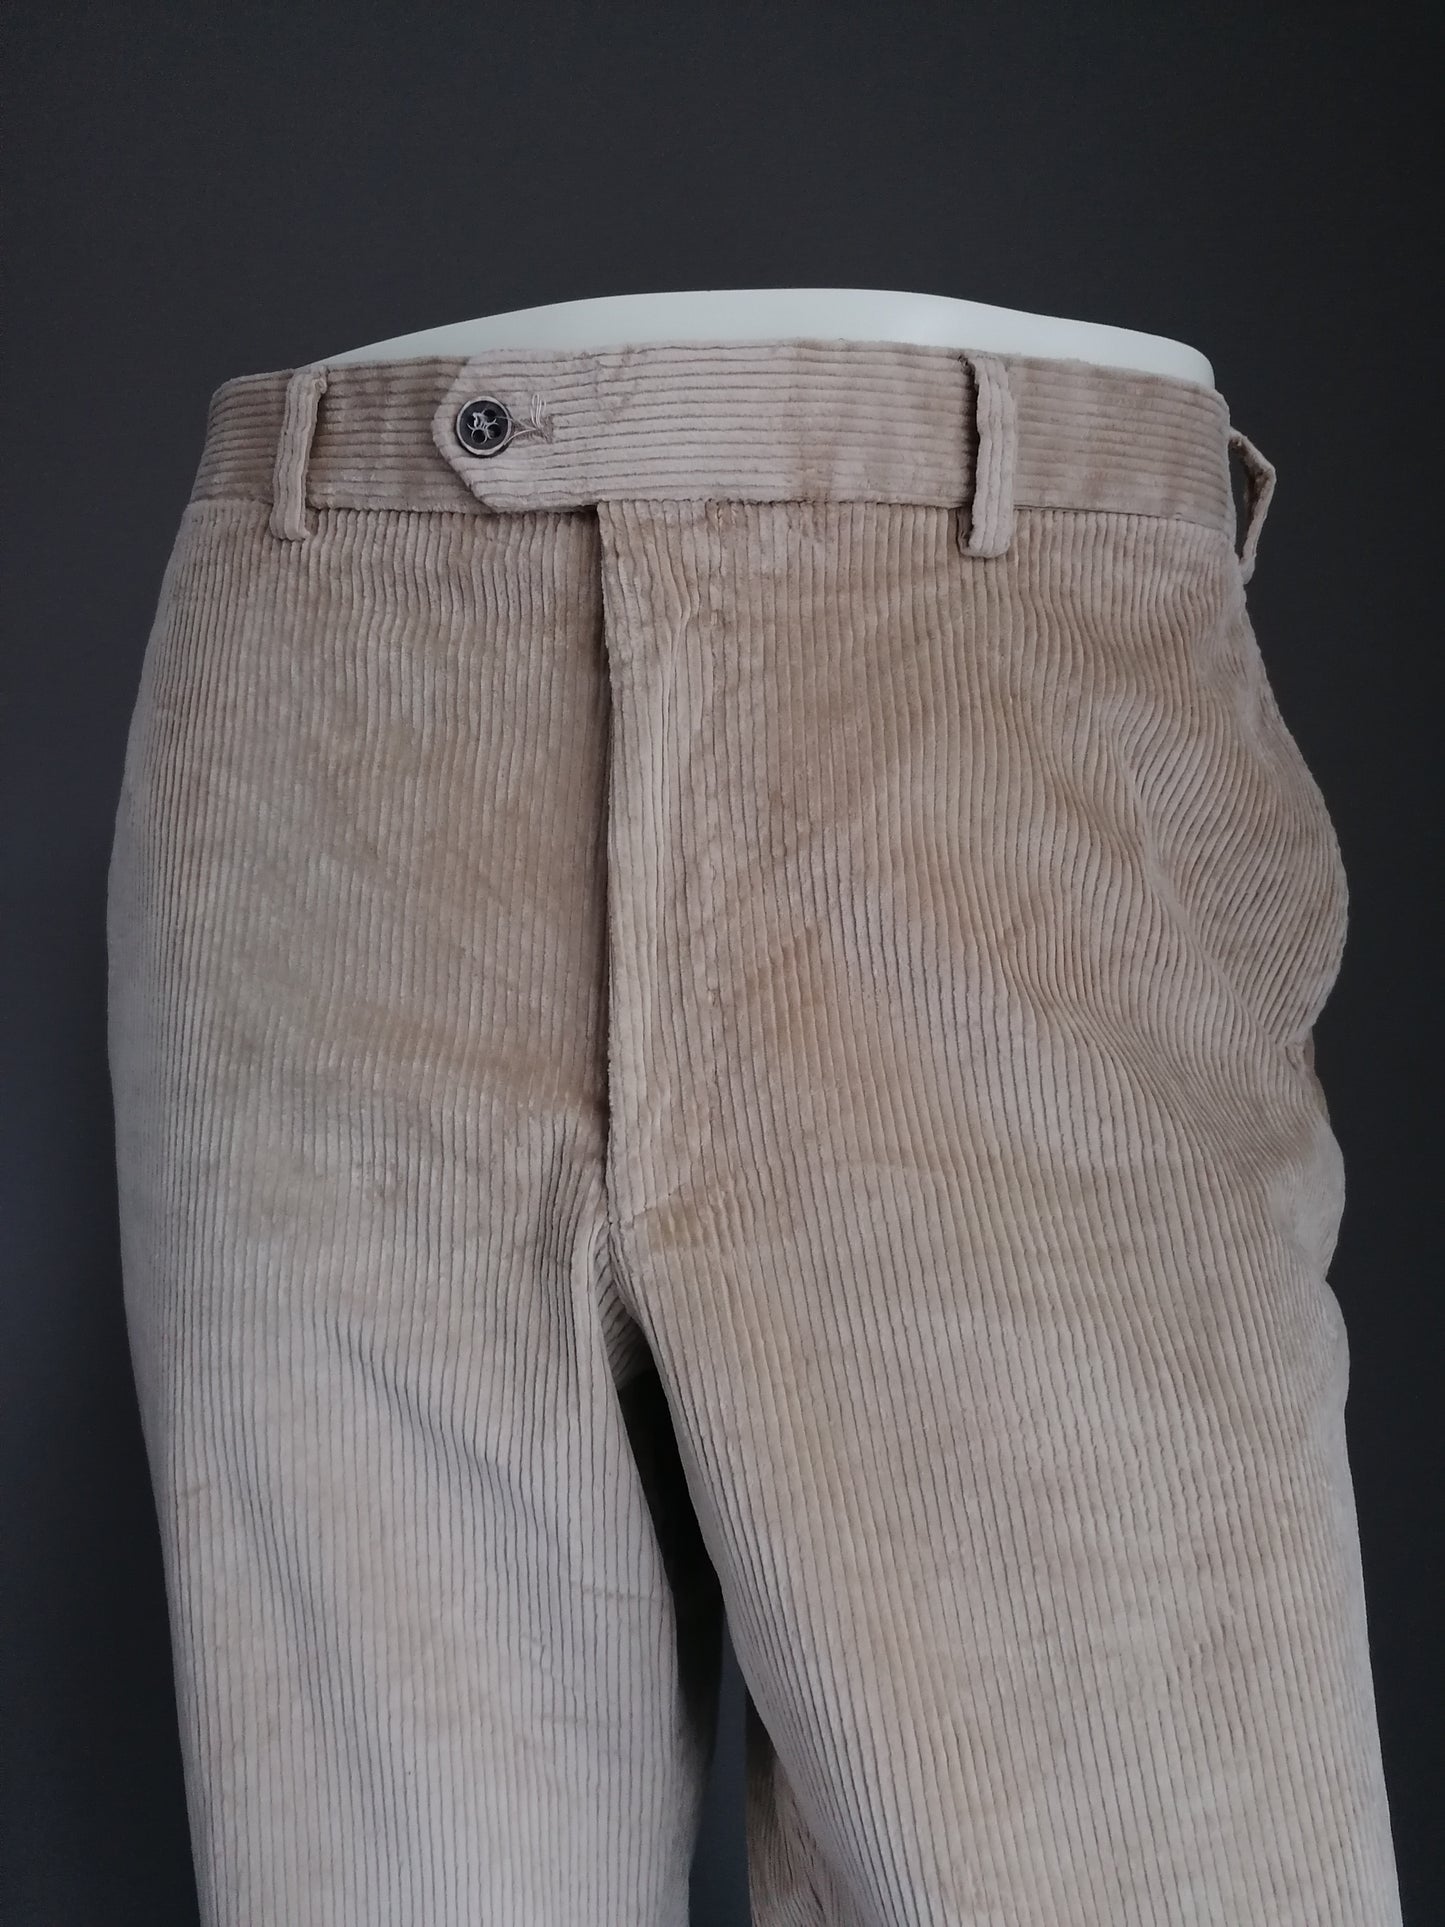 Pantalon nerveux hiltl / pantalon. Couleur brun clair. Taille 54 / L